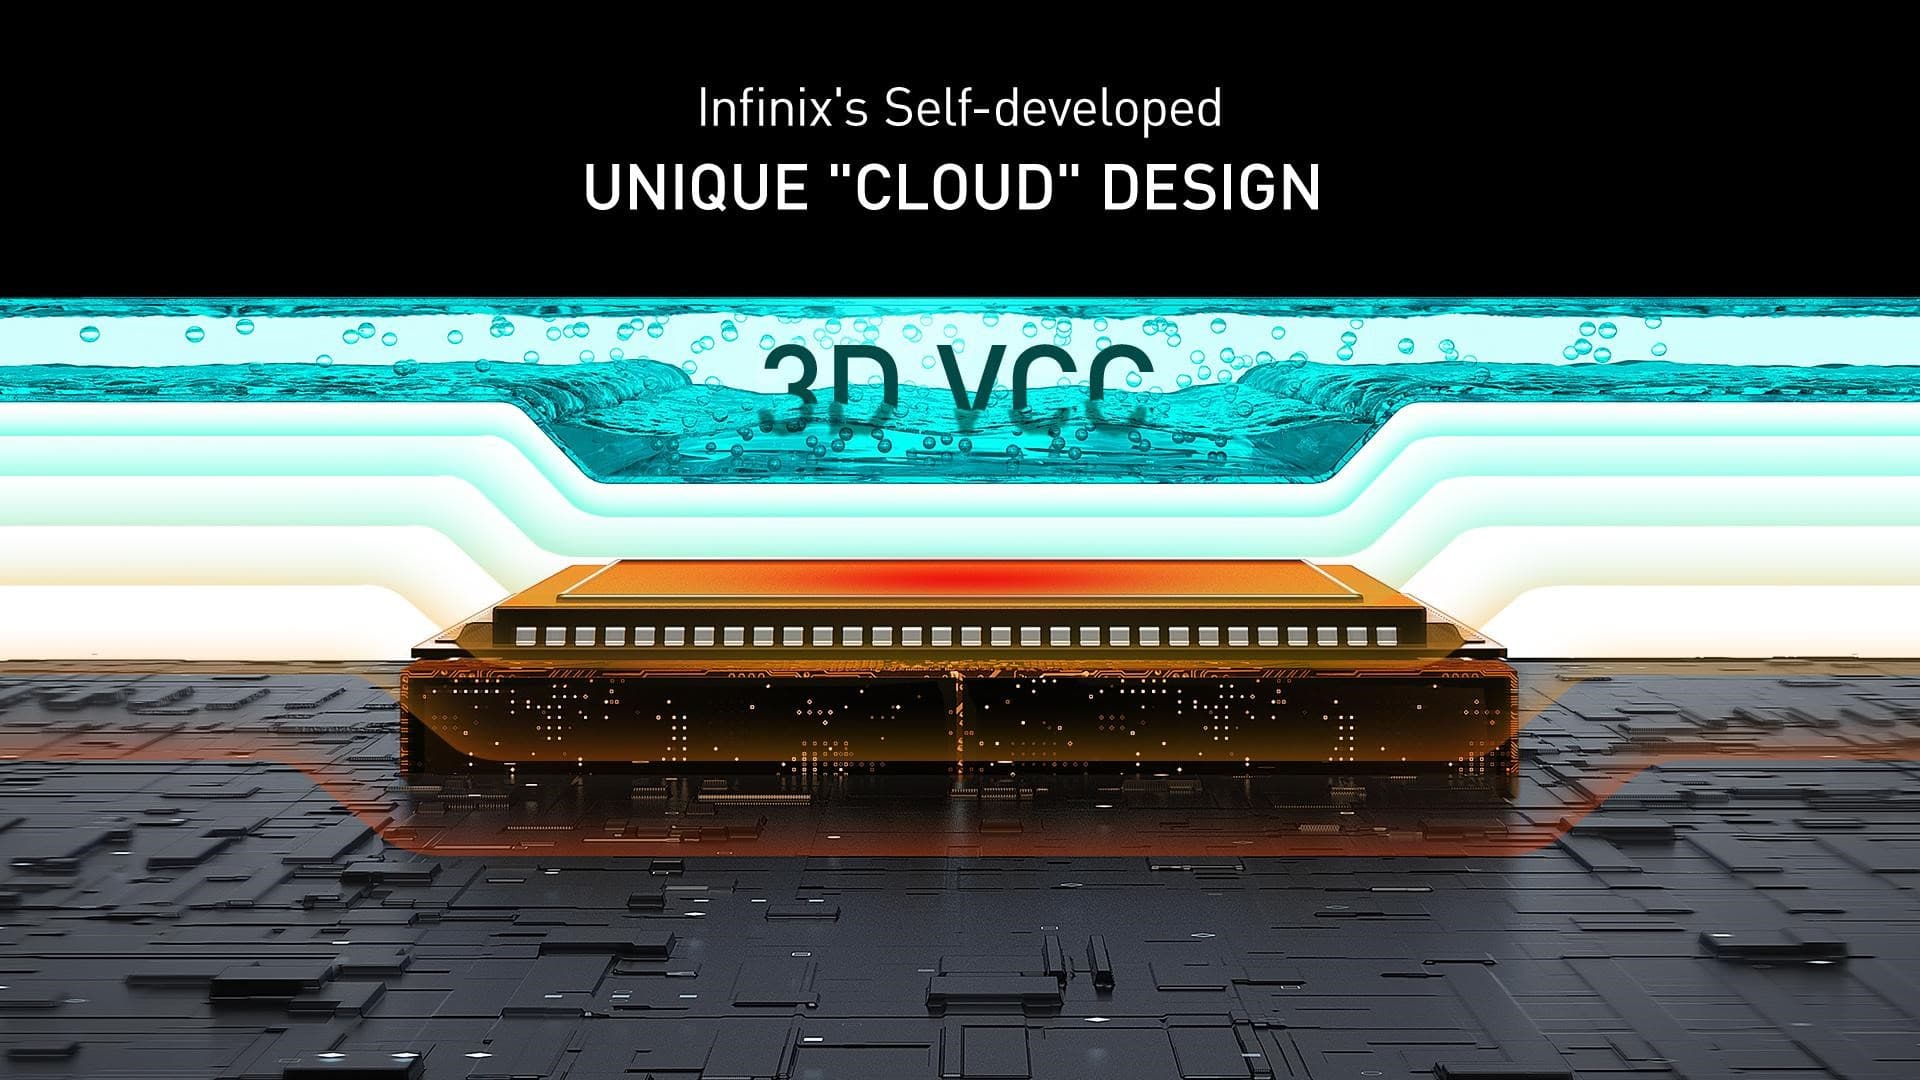 3D Vapor Cloud Chamber (3D VCC)